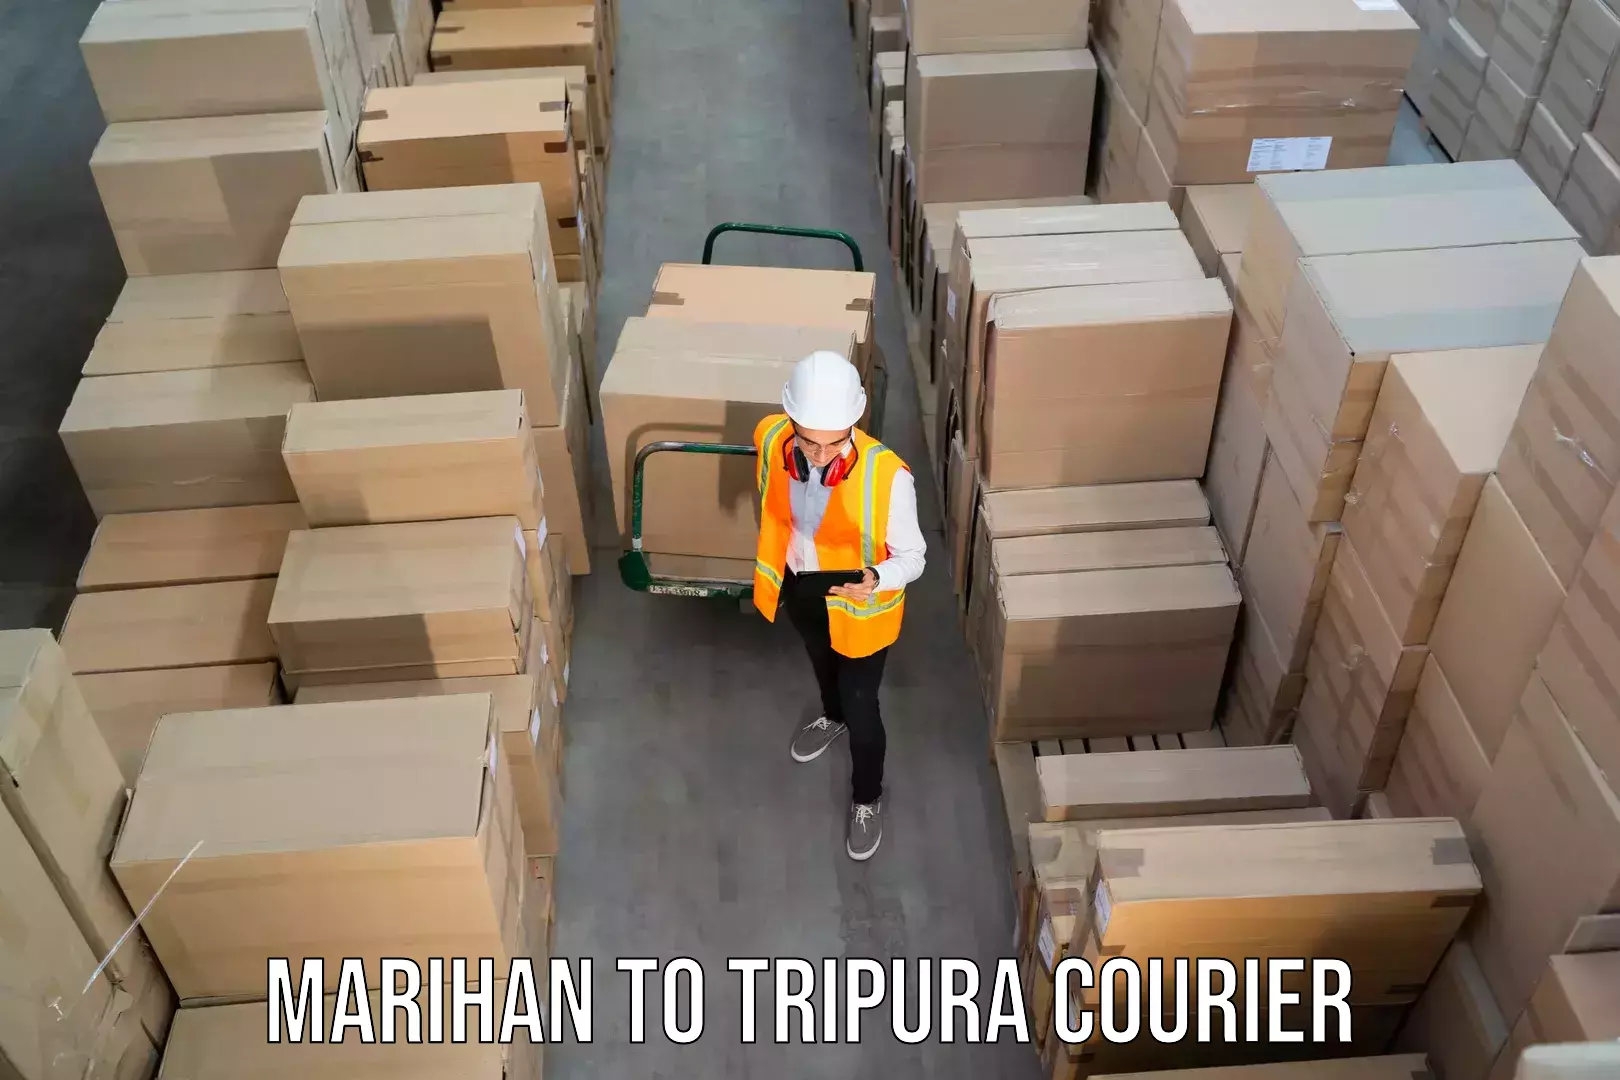 Online courier booking Marihan to Manu Bazar